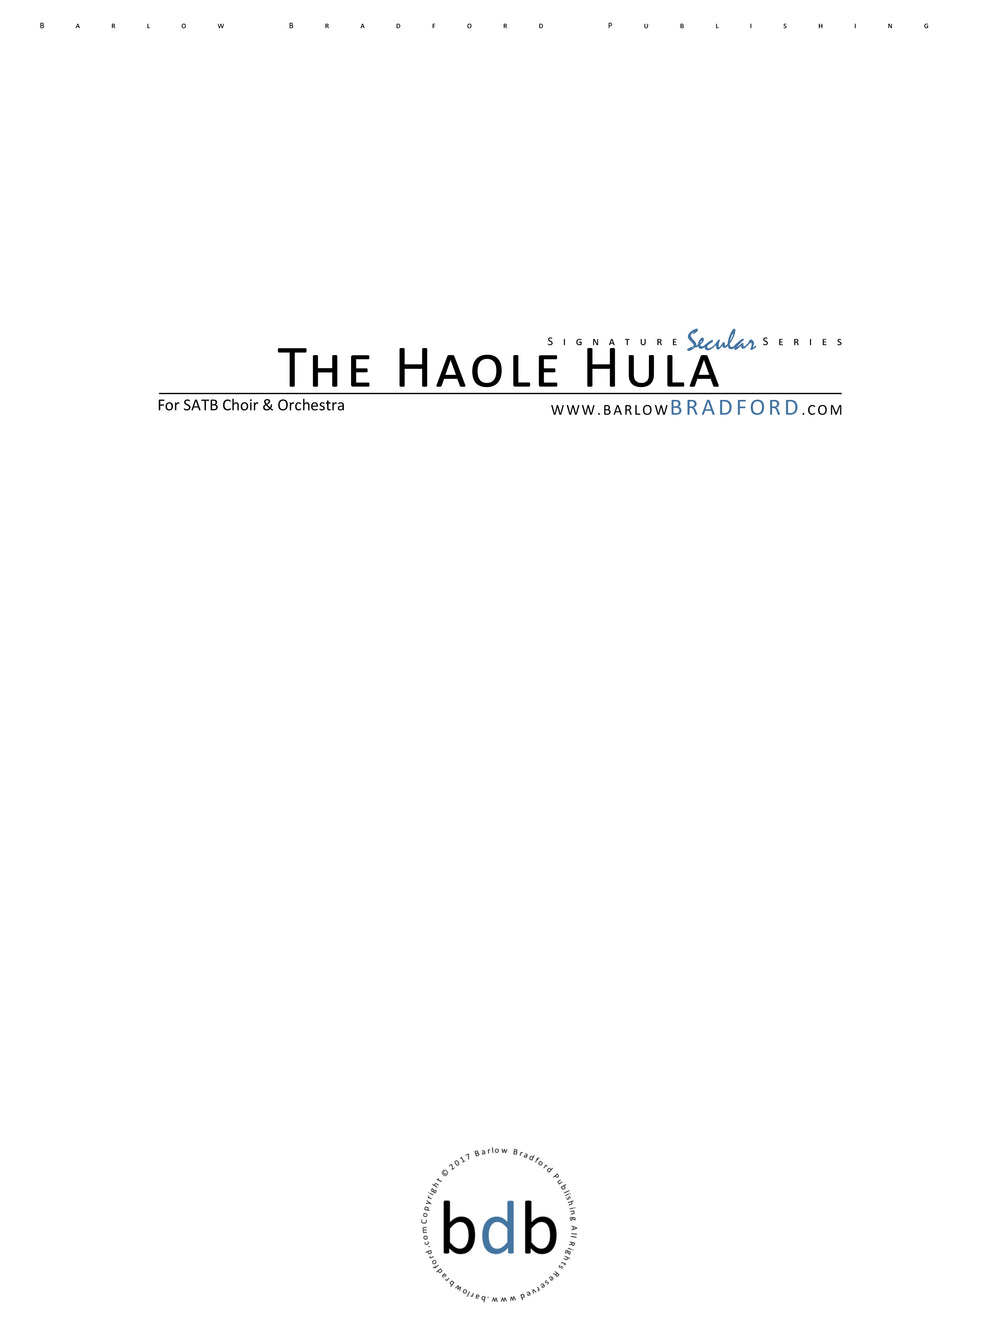 The Haole Hula